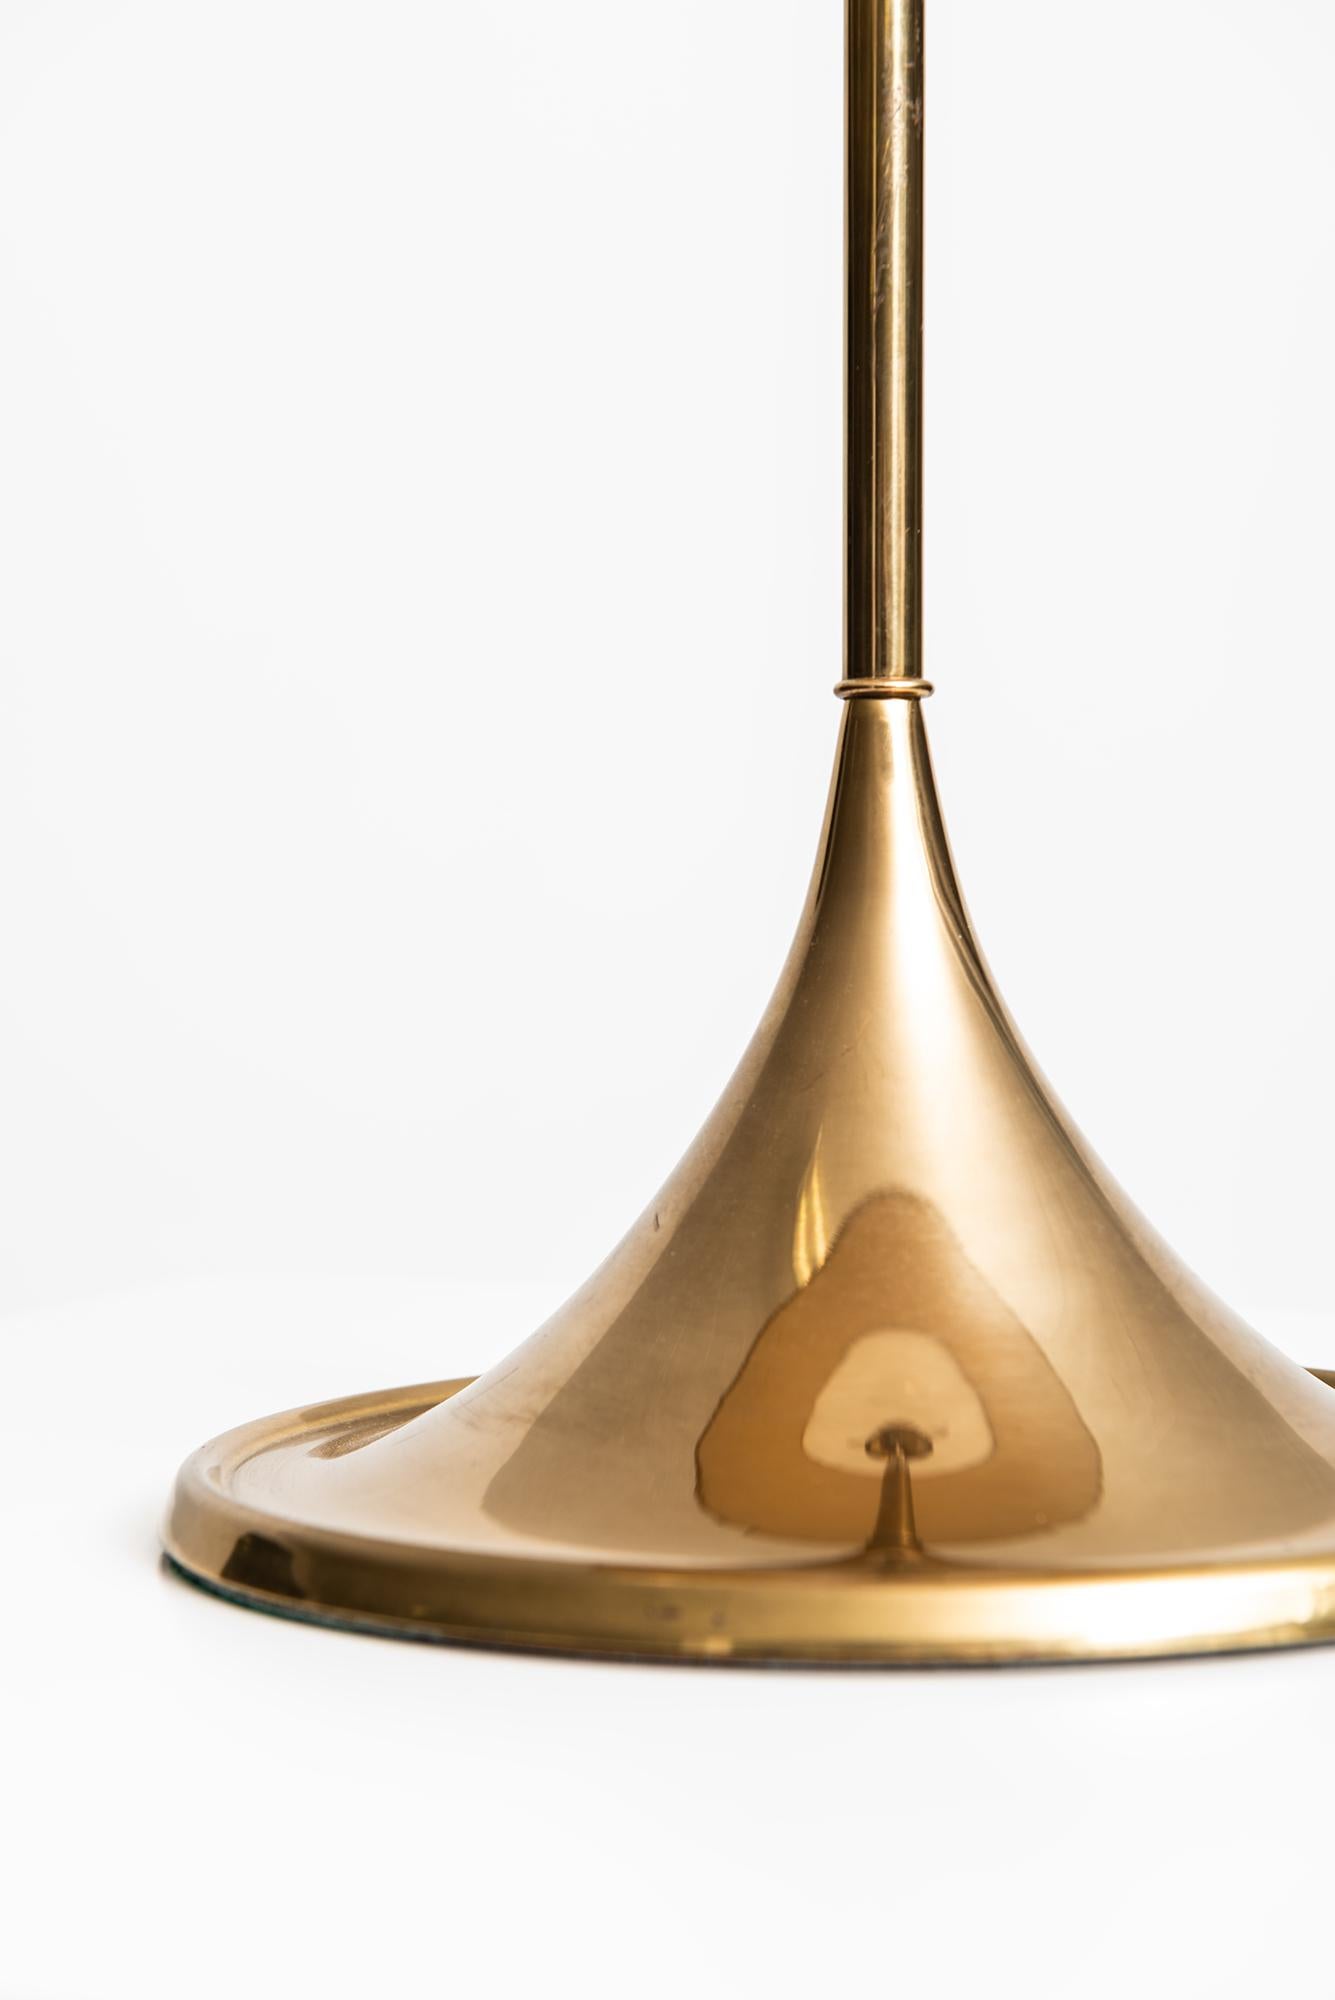 Scandinavian Modern Table Lamp Model B-024 in Brass Produced by Bergbom in Sweden For Sale